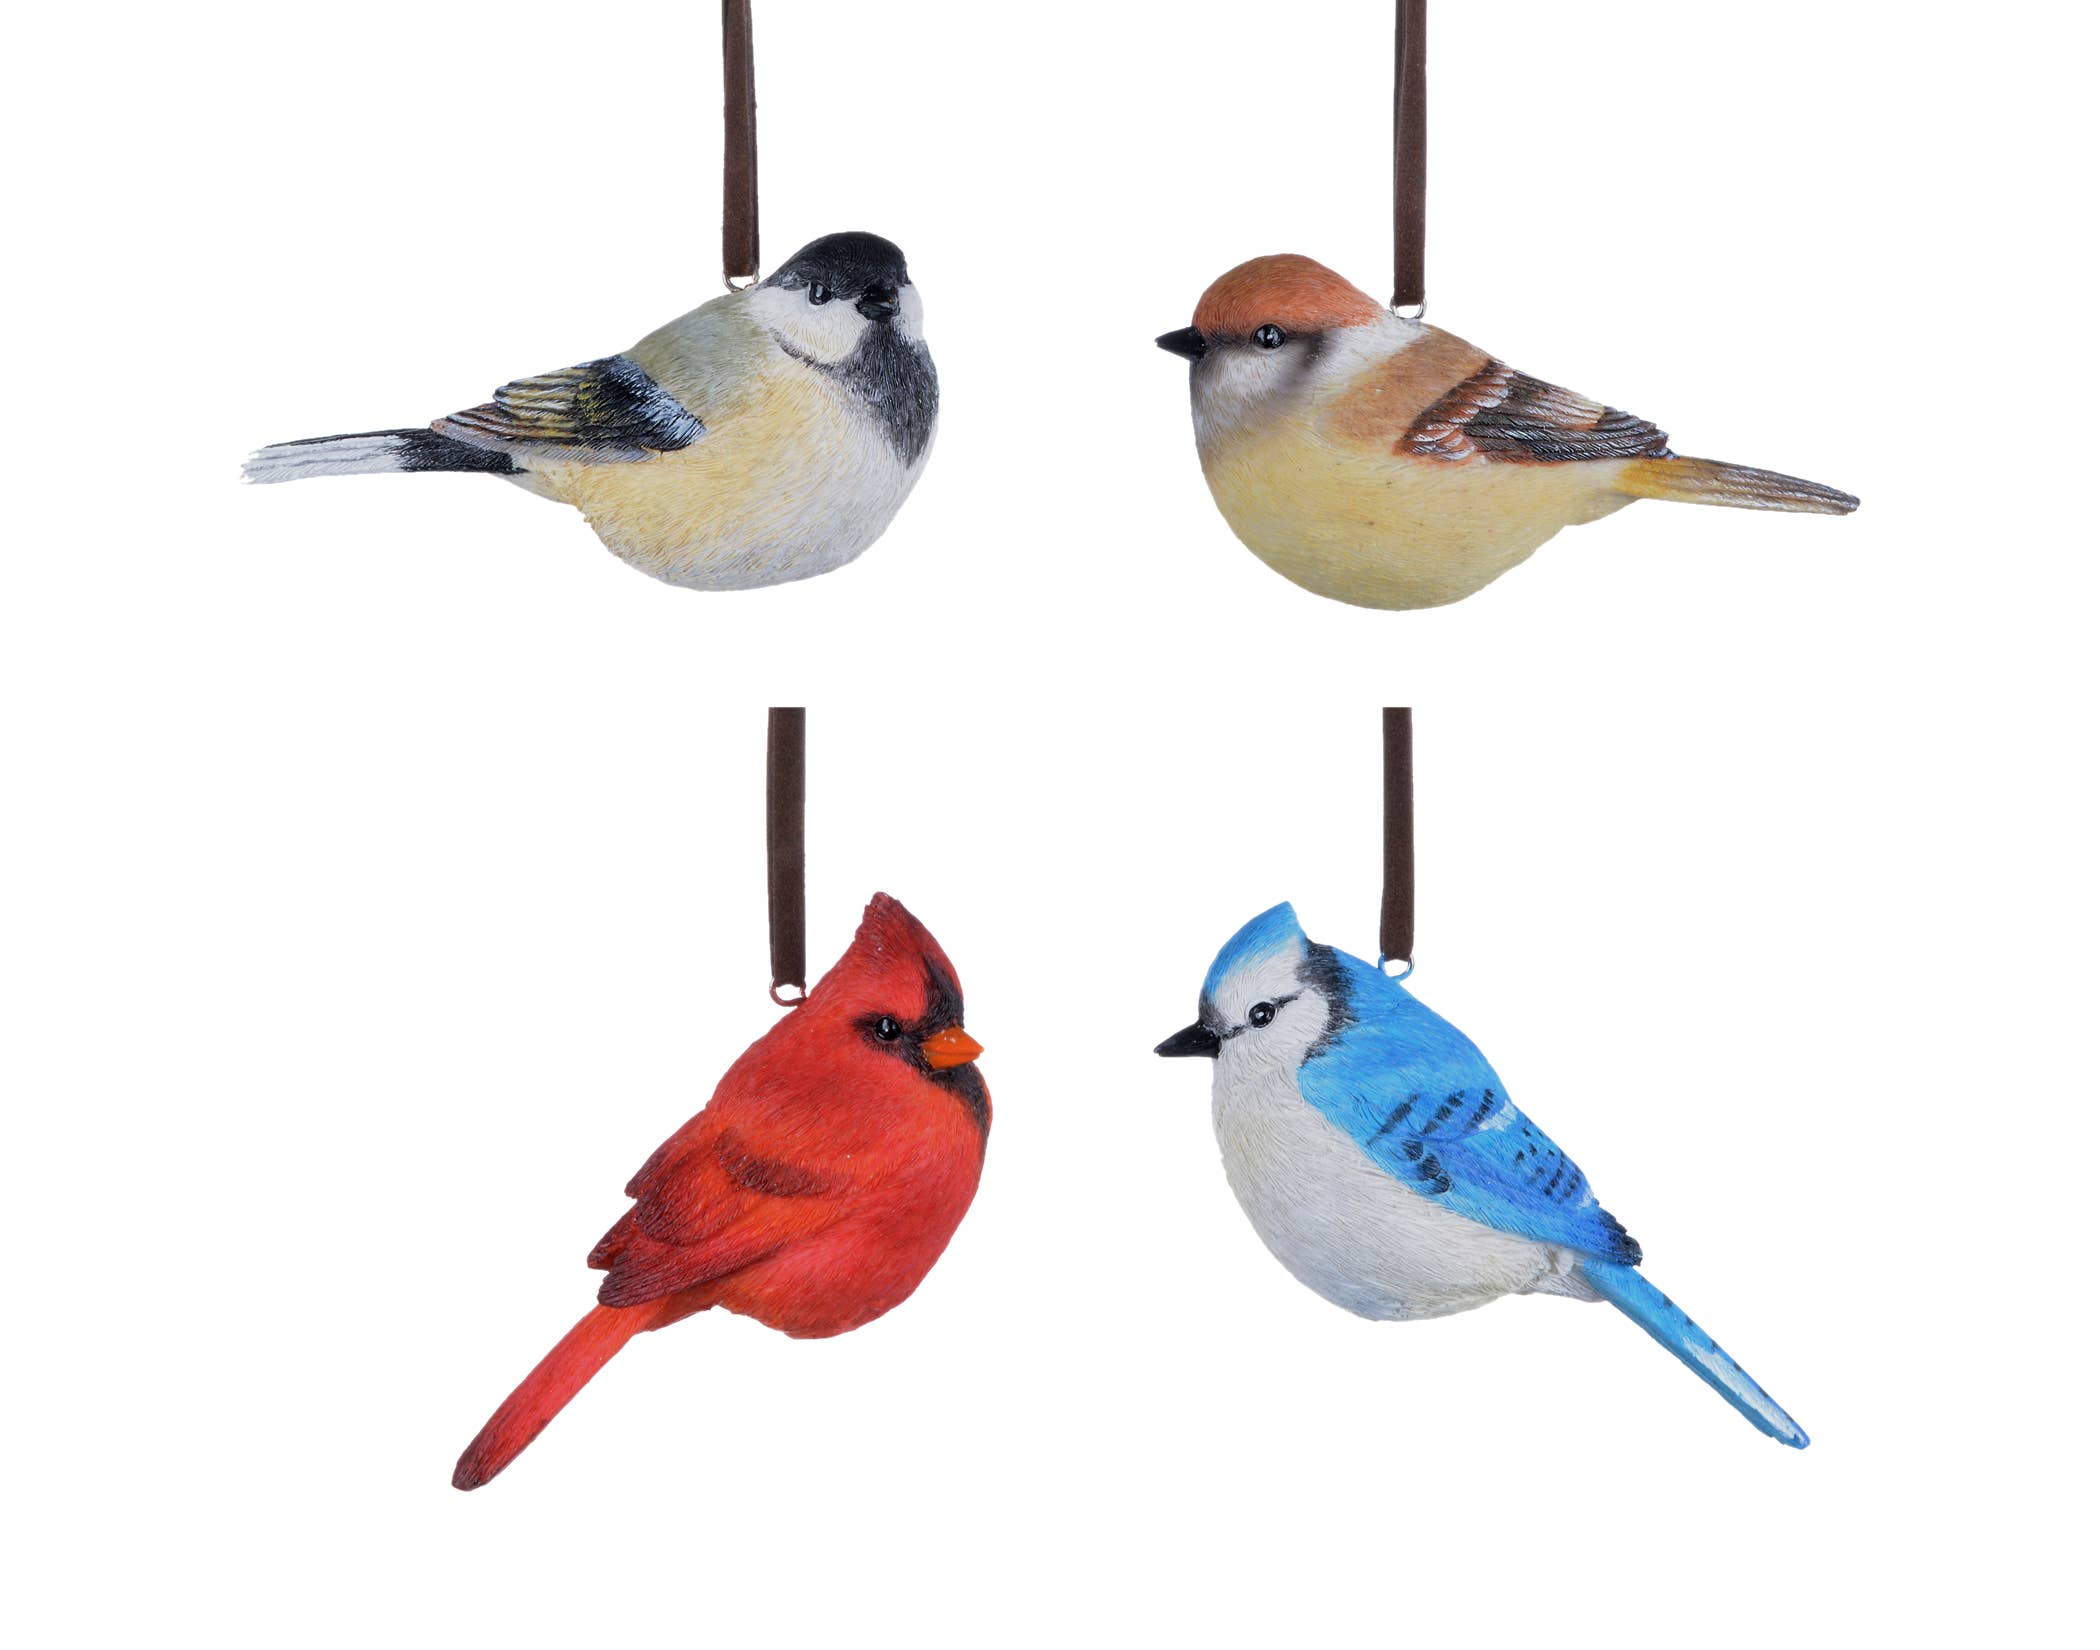 Ornament: 4.5" Sparrow Songbird